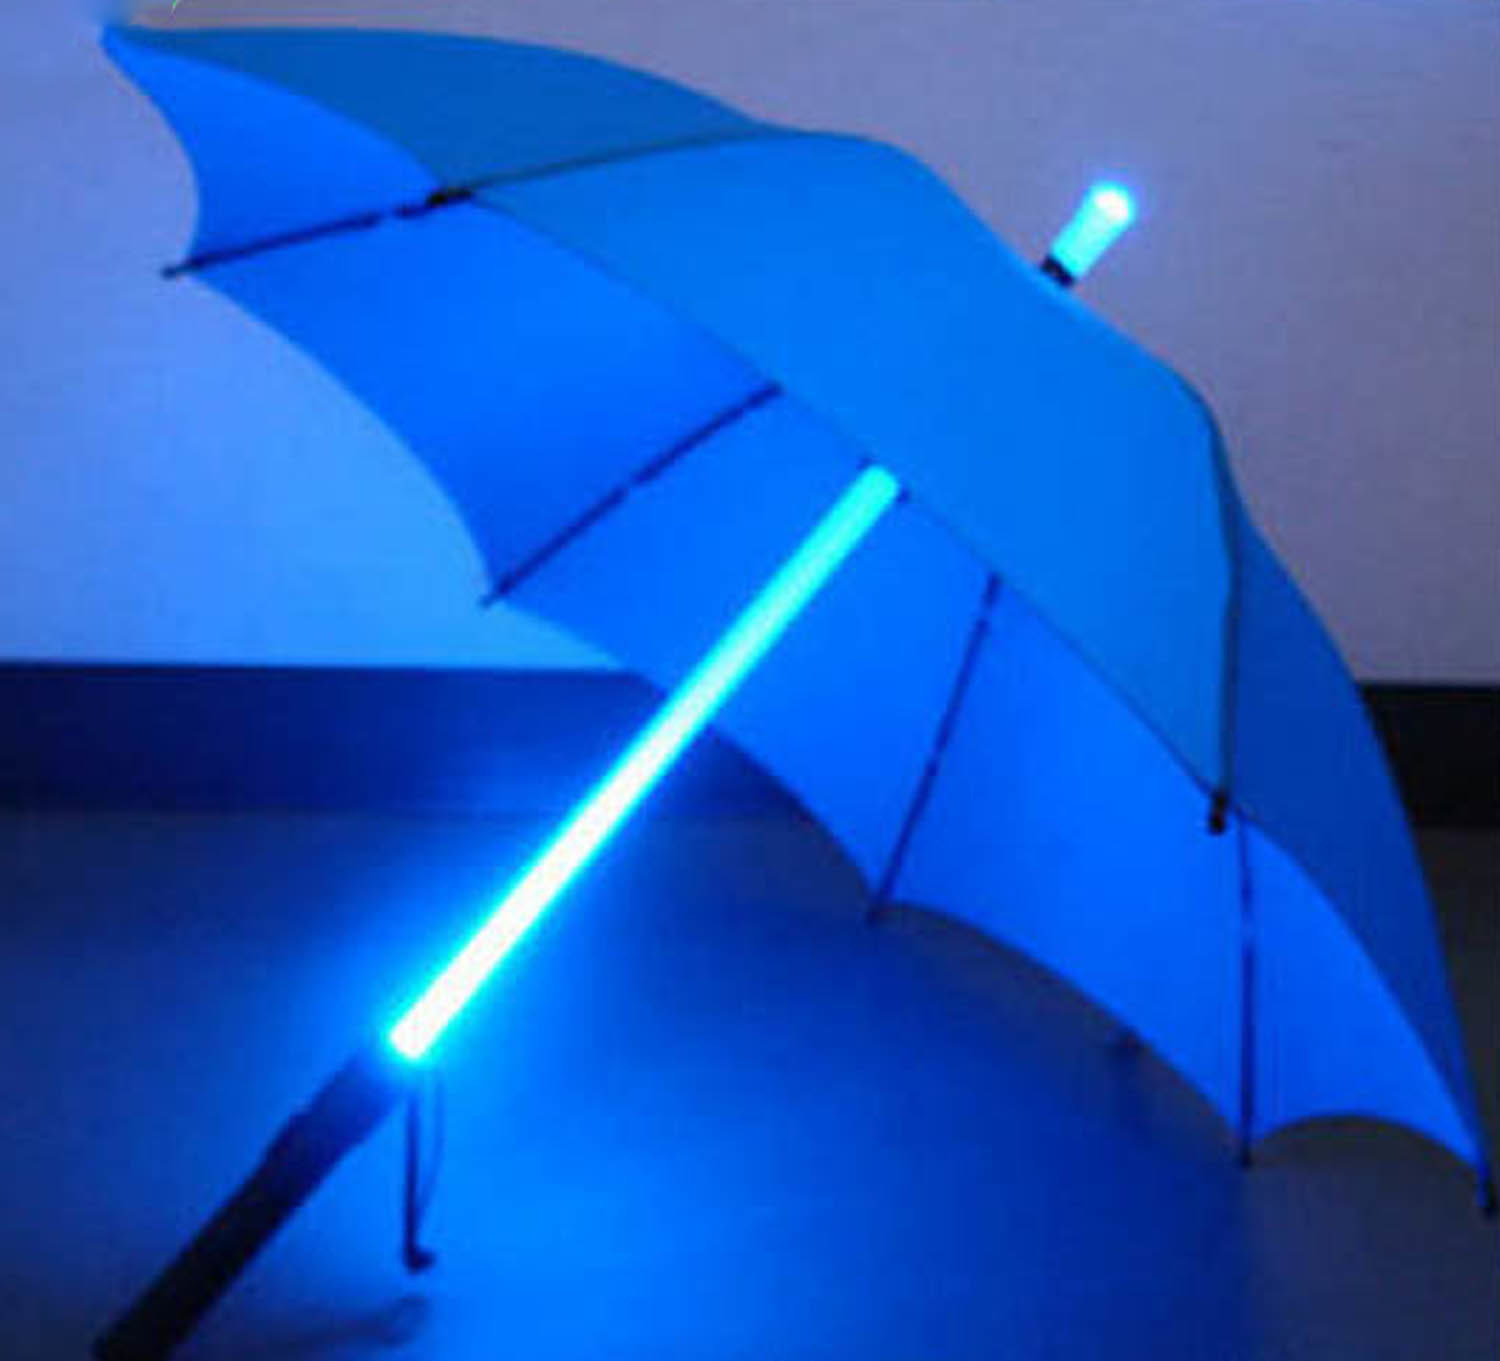 lightsaber-umbrella-led-light-up-golf-umbrellas-with-color-changing.jpg